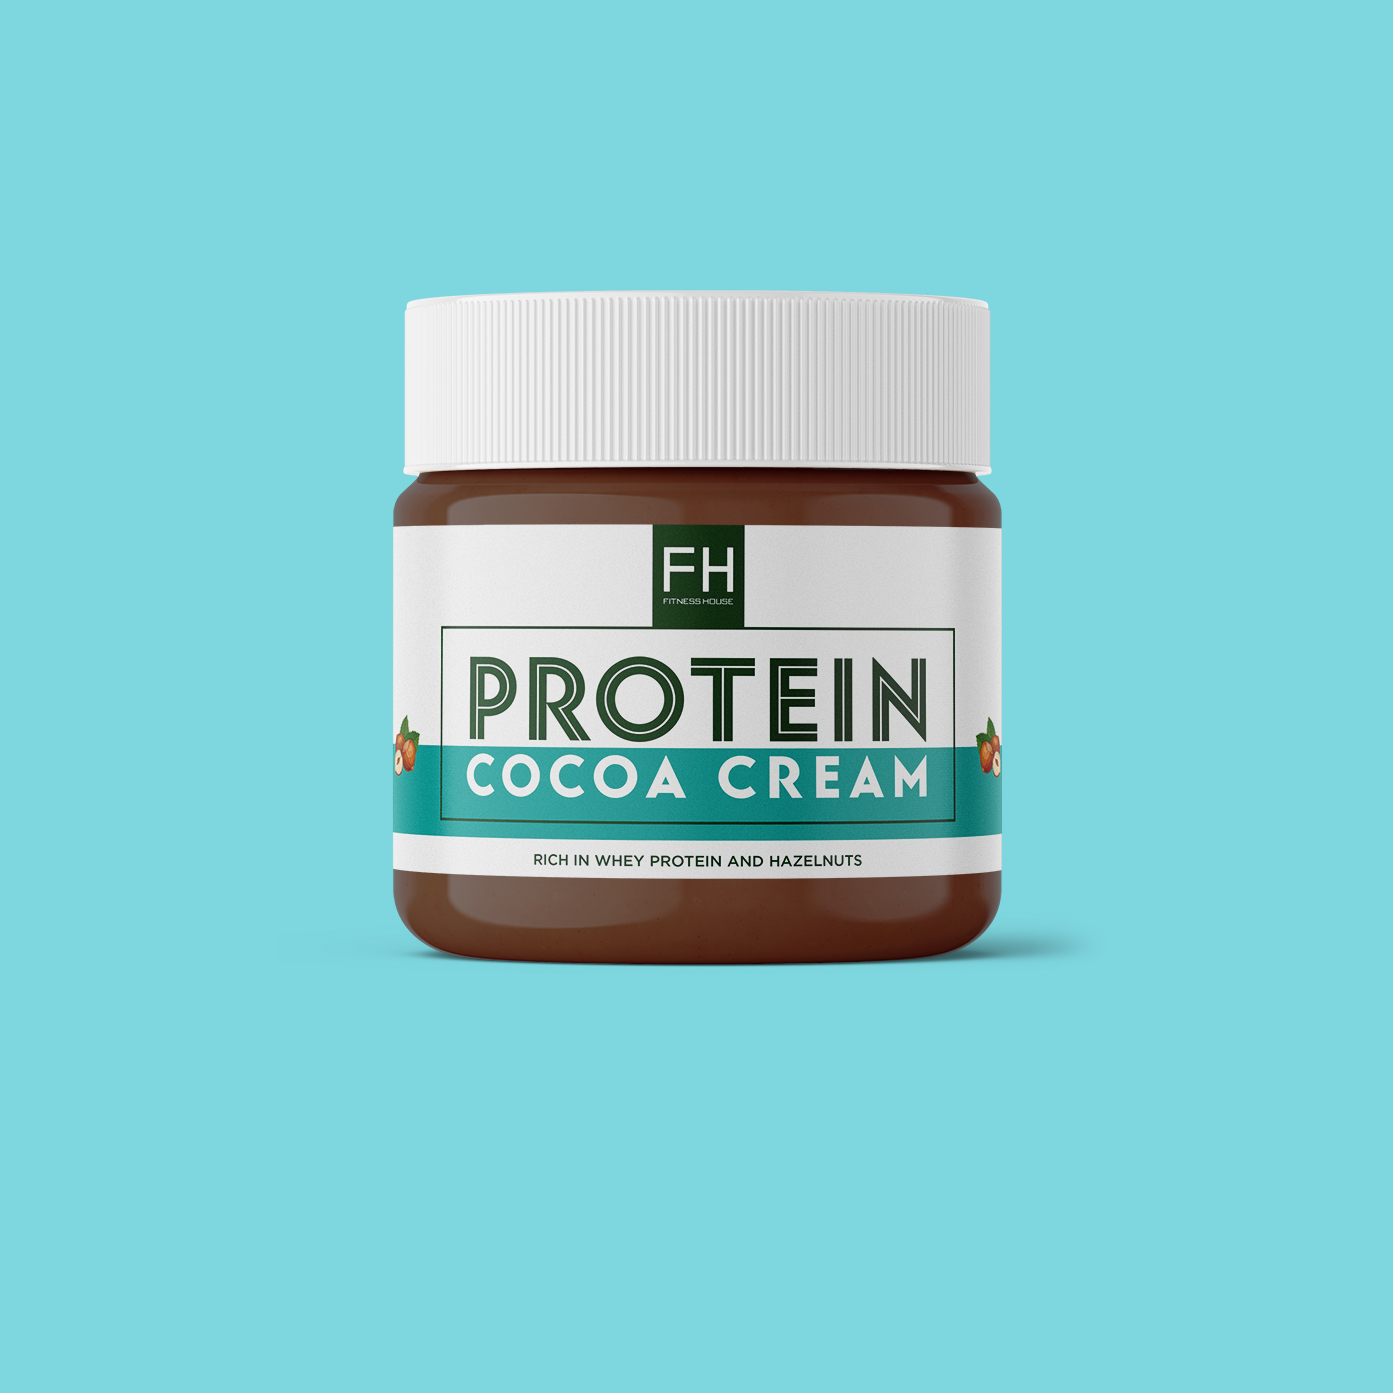 Protein Cocoa Cream